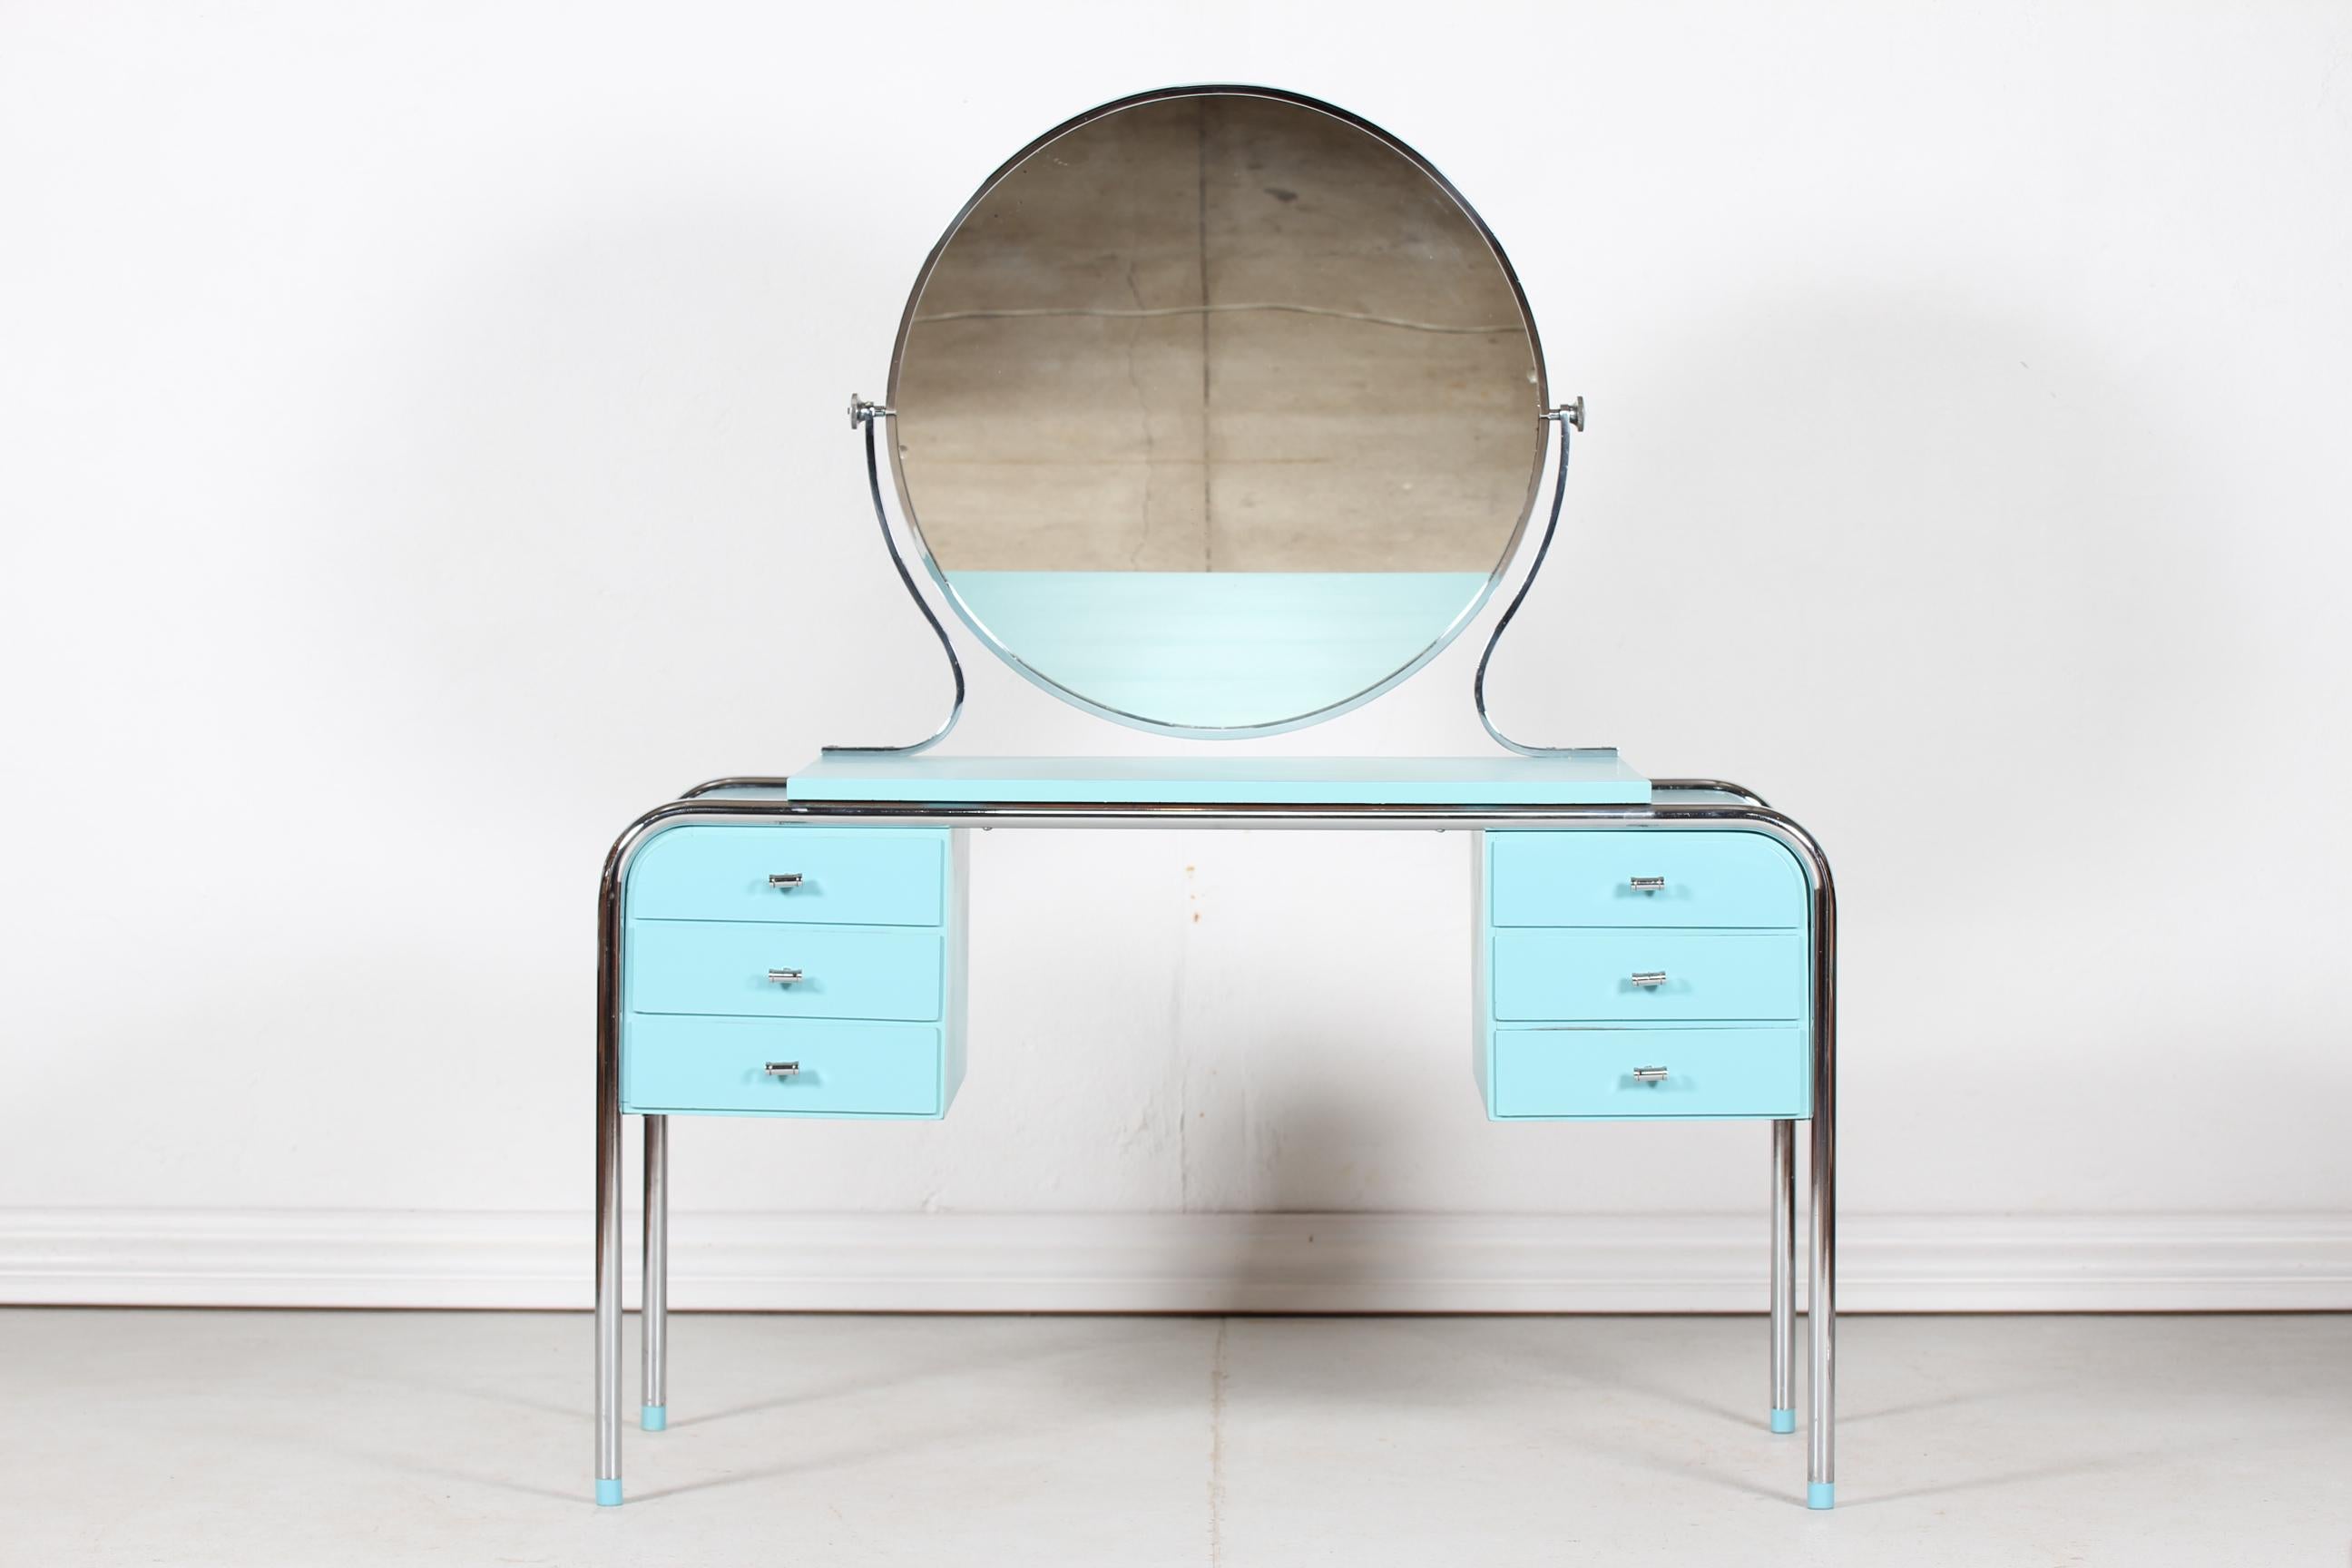 Dänischer Art Deco Frisiertisch mit 6 Schubladen, rundem Kippspiegel und passendem Stuhl, hergestellt von einem dänischen Tischler in den 1930er Jahren.
Das Gestell des Tisches, des Spiegels und des Stuhls ist aus verchromtem Metall, die Holzteile